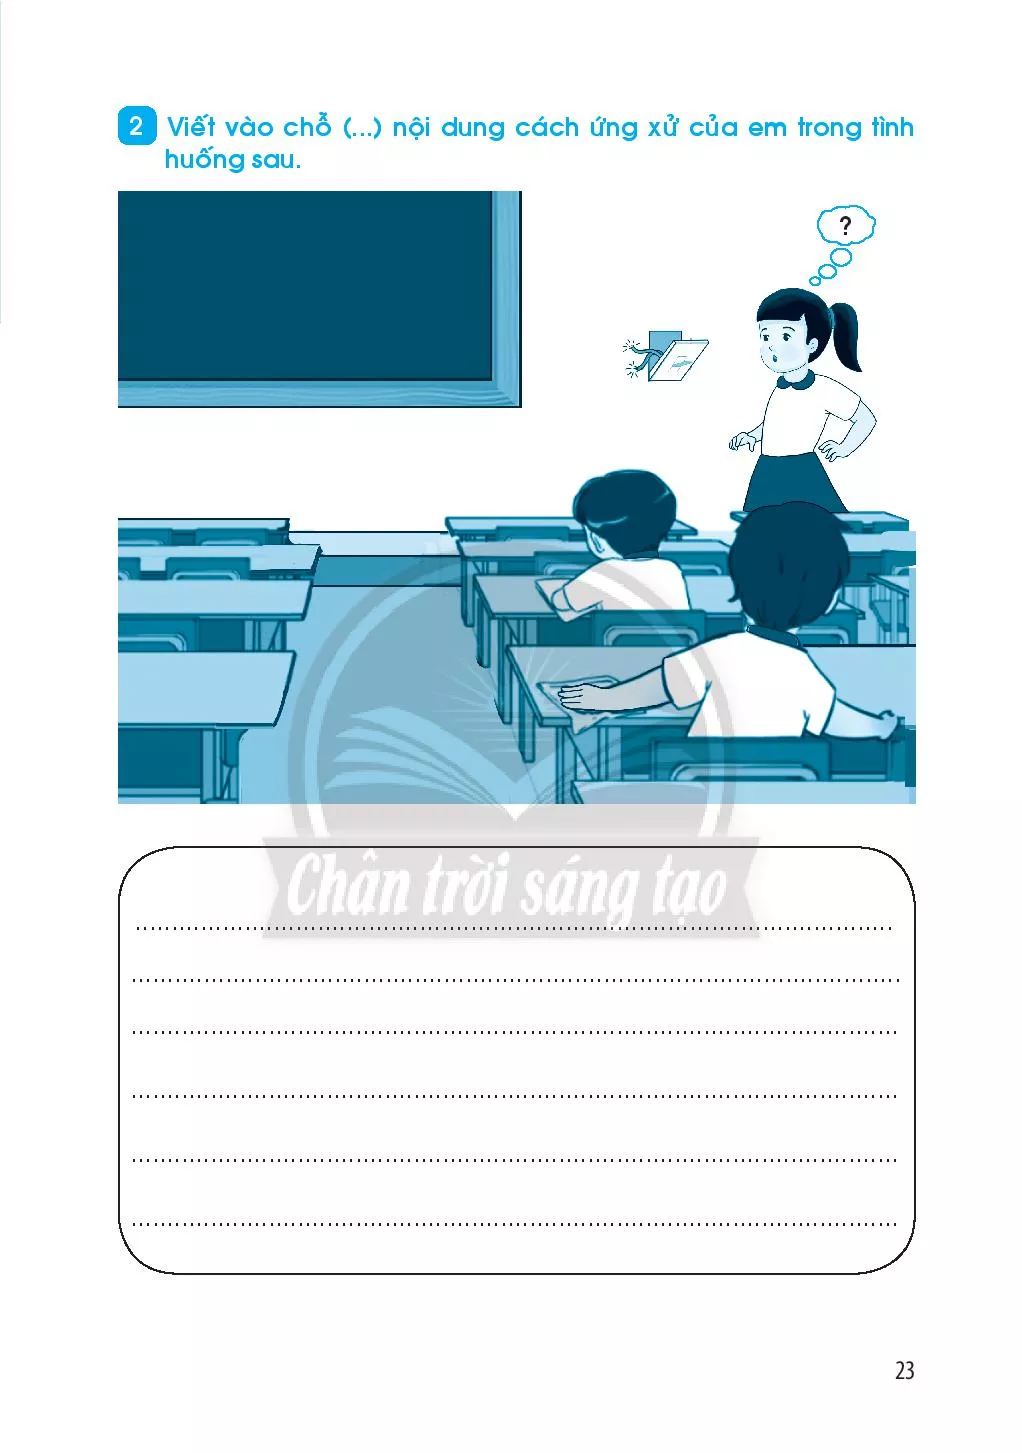 Bài 8: An toàn và giữ vệ sinh khi tham các hoạt động ở trường